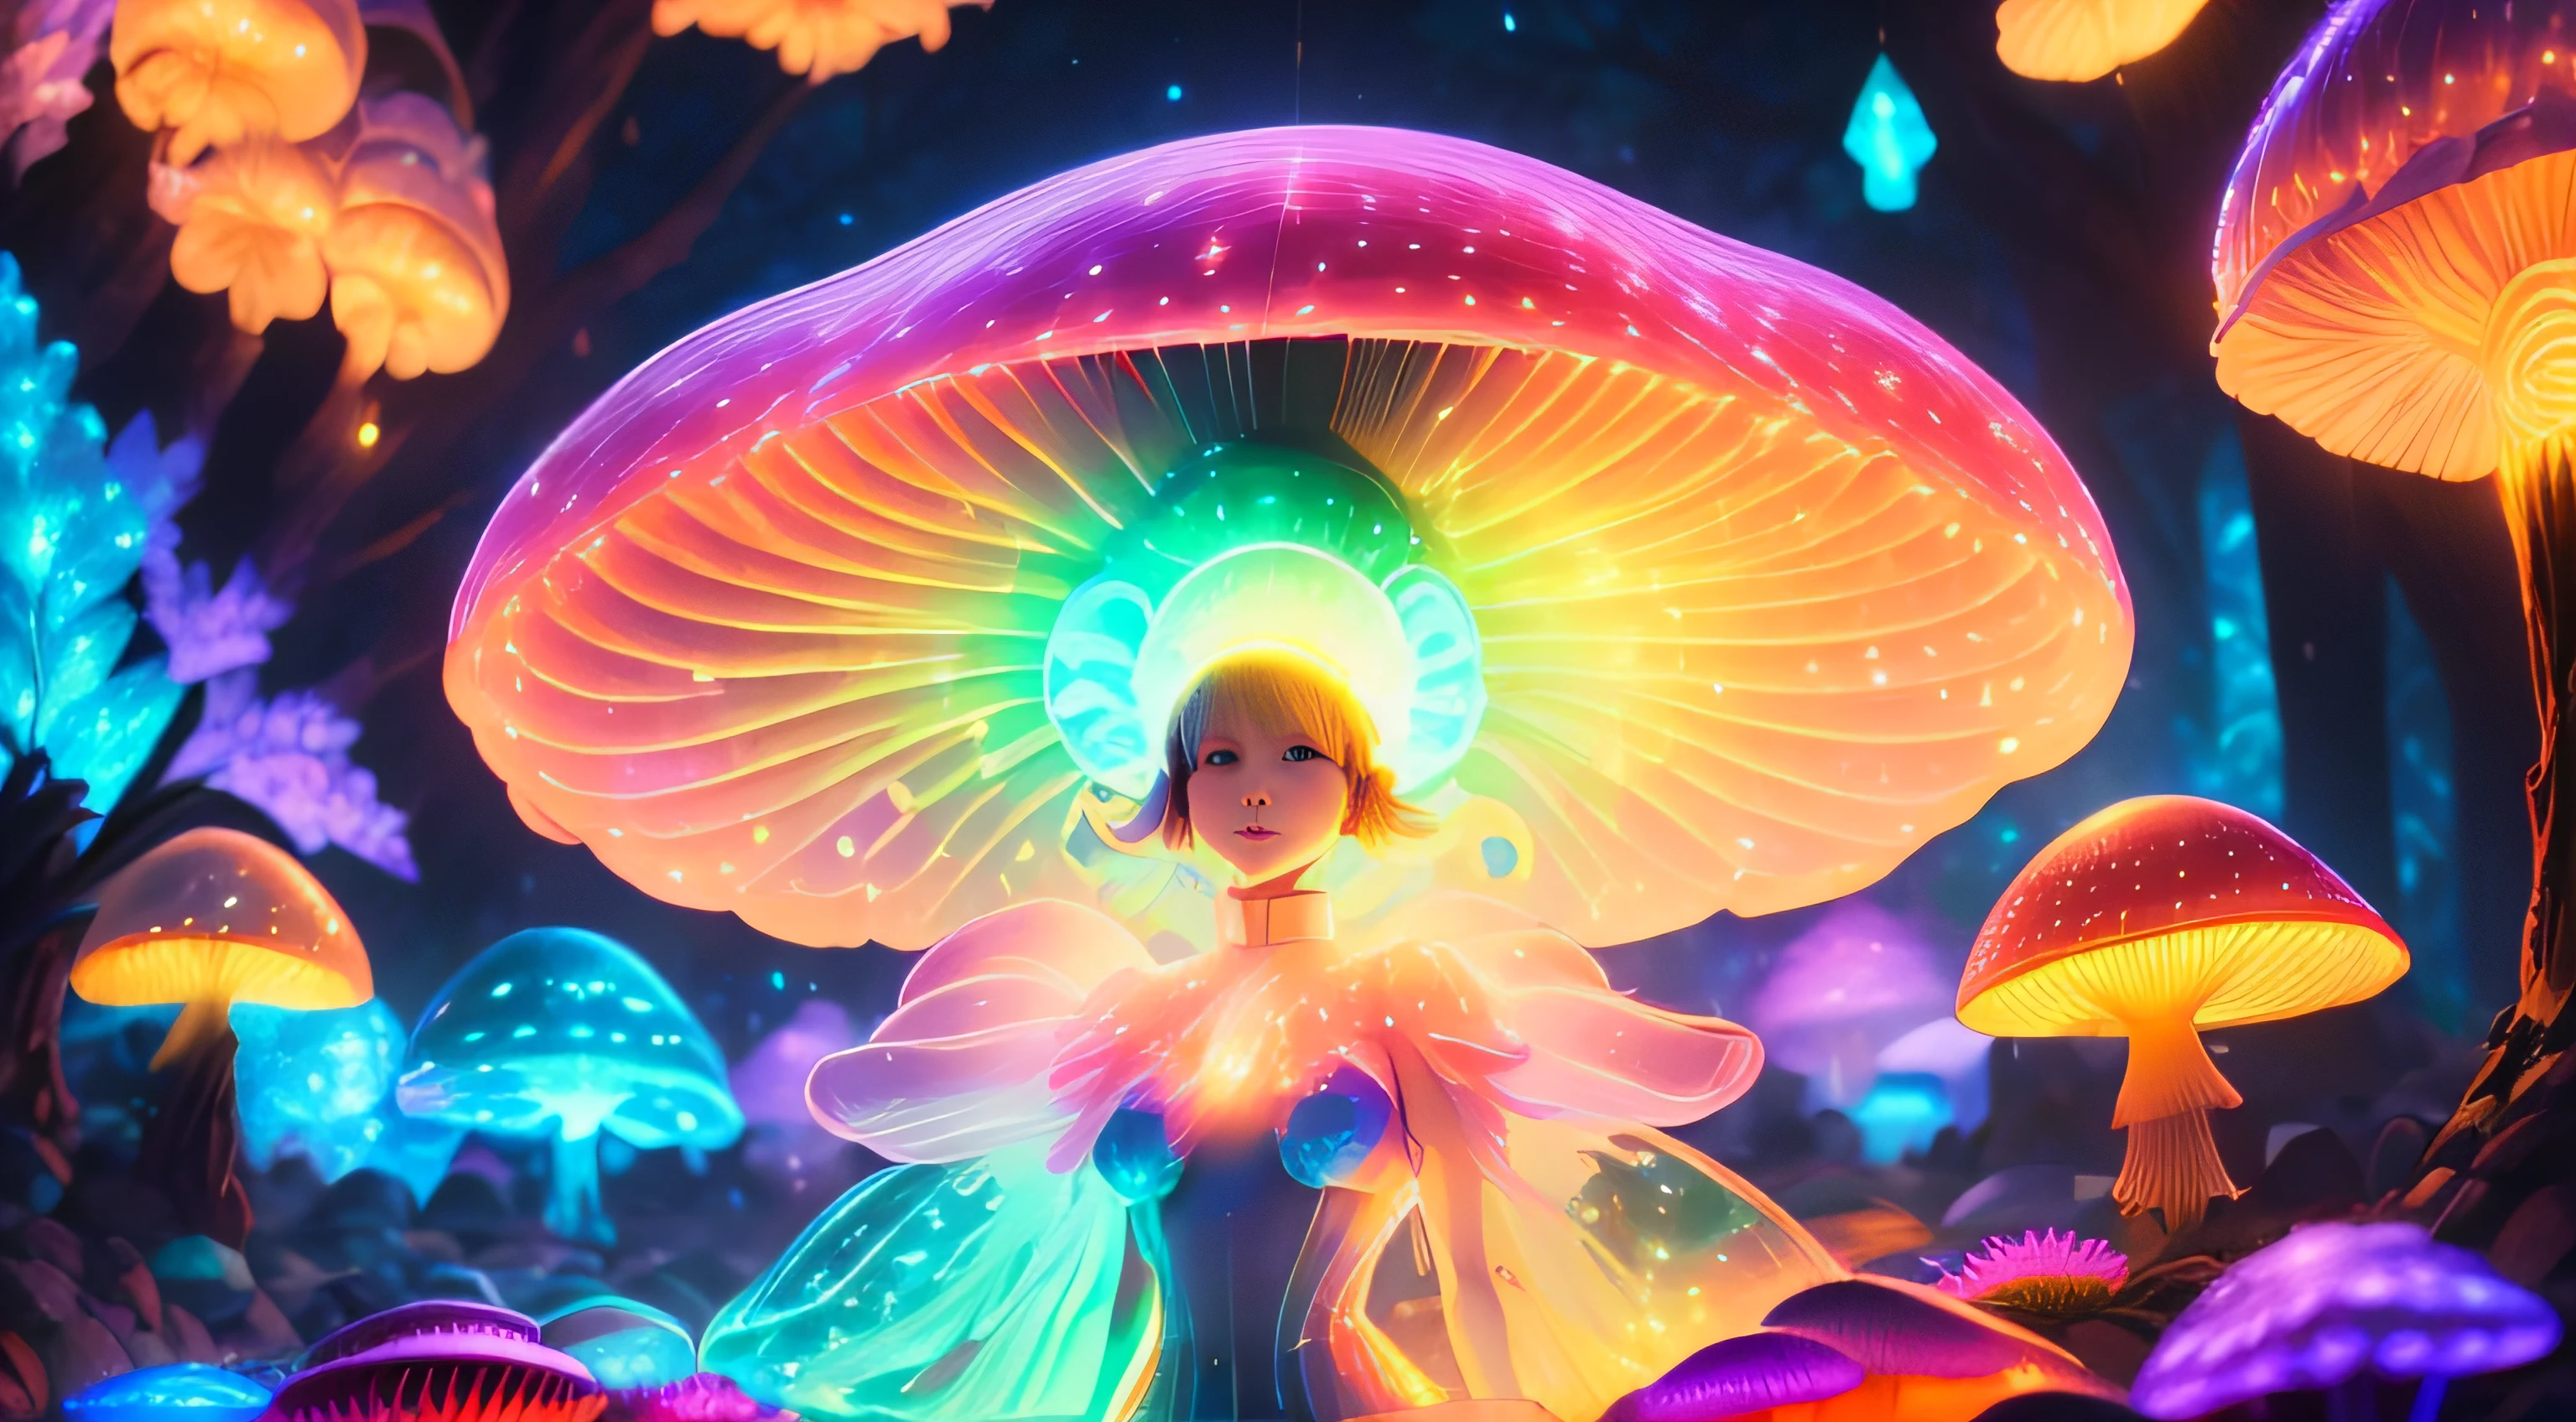 (更好的品質, 超詳細, 16k, 鮮豔的色彩, 散景) 身體完全由蘑菇組成 生物發光蘑菇, 一個女孩與蘑菇, 鮮豔的色彩, 幻想, 神奇的生物, 色彩繽紛、纖細的孢子, 空靈的照明, 柔和的光芒, 迷人的光影, 超自然表演